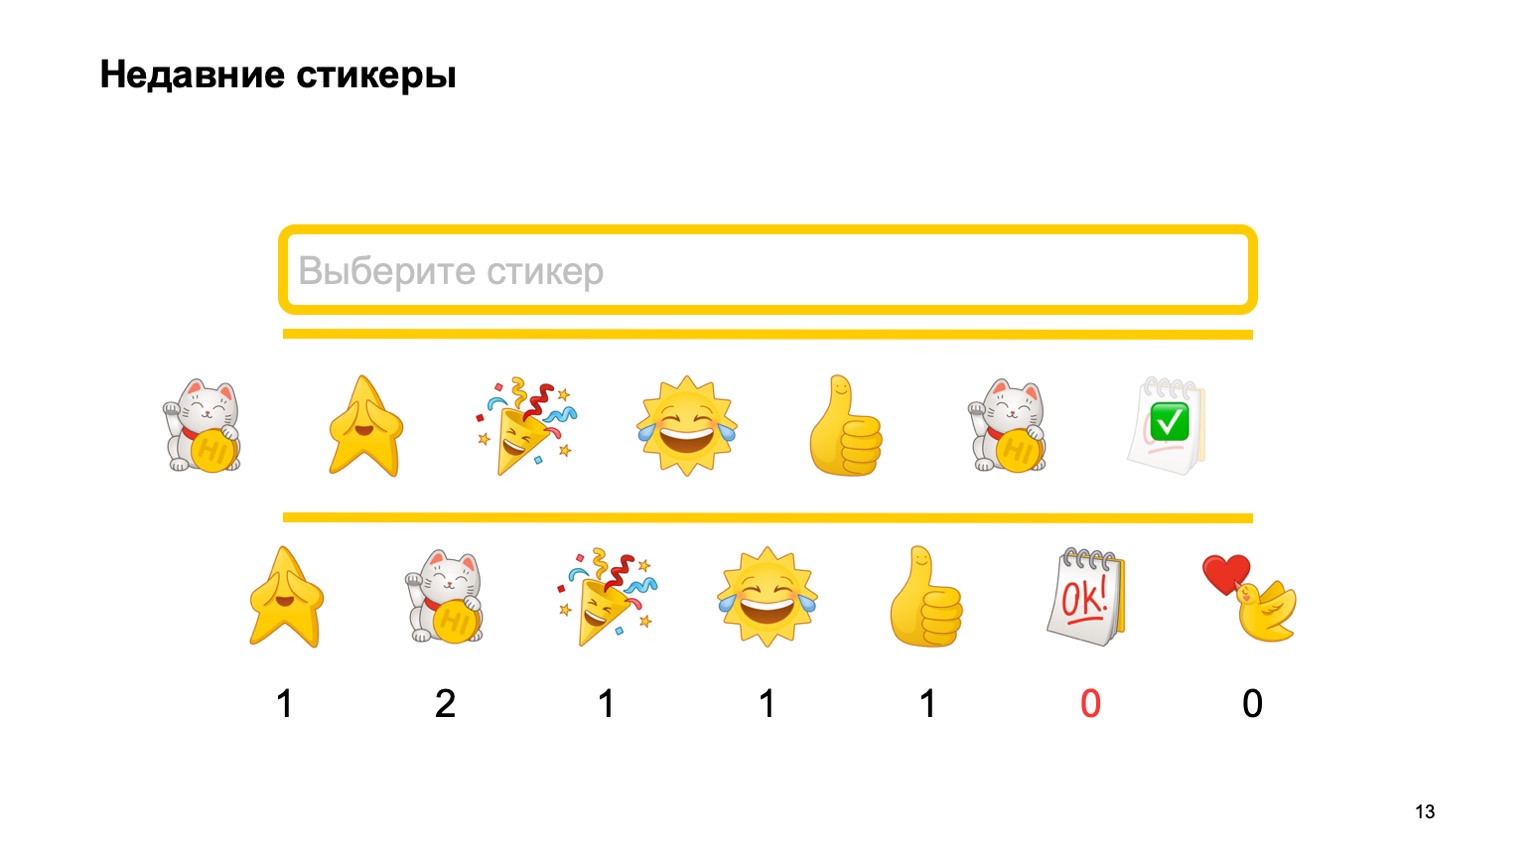 Мобильная разработка — это просто и скучно? Доклад Яндекса - 12